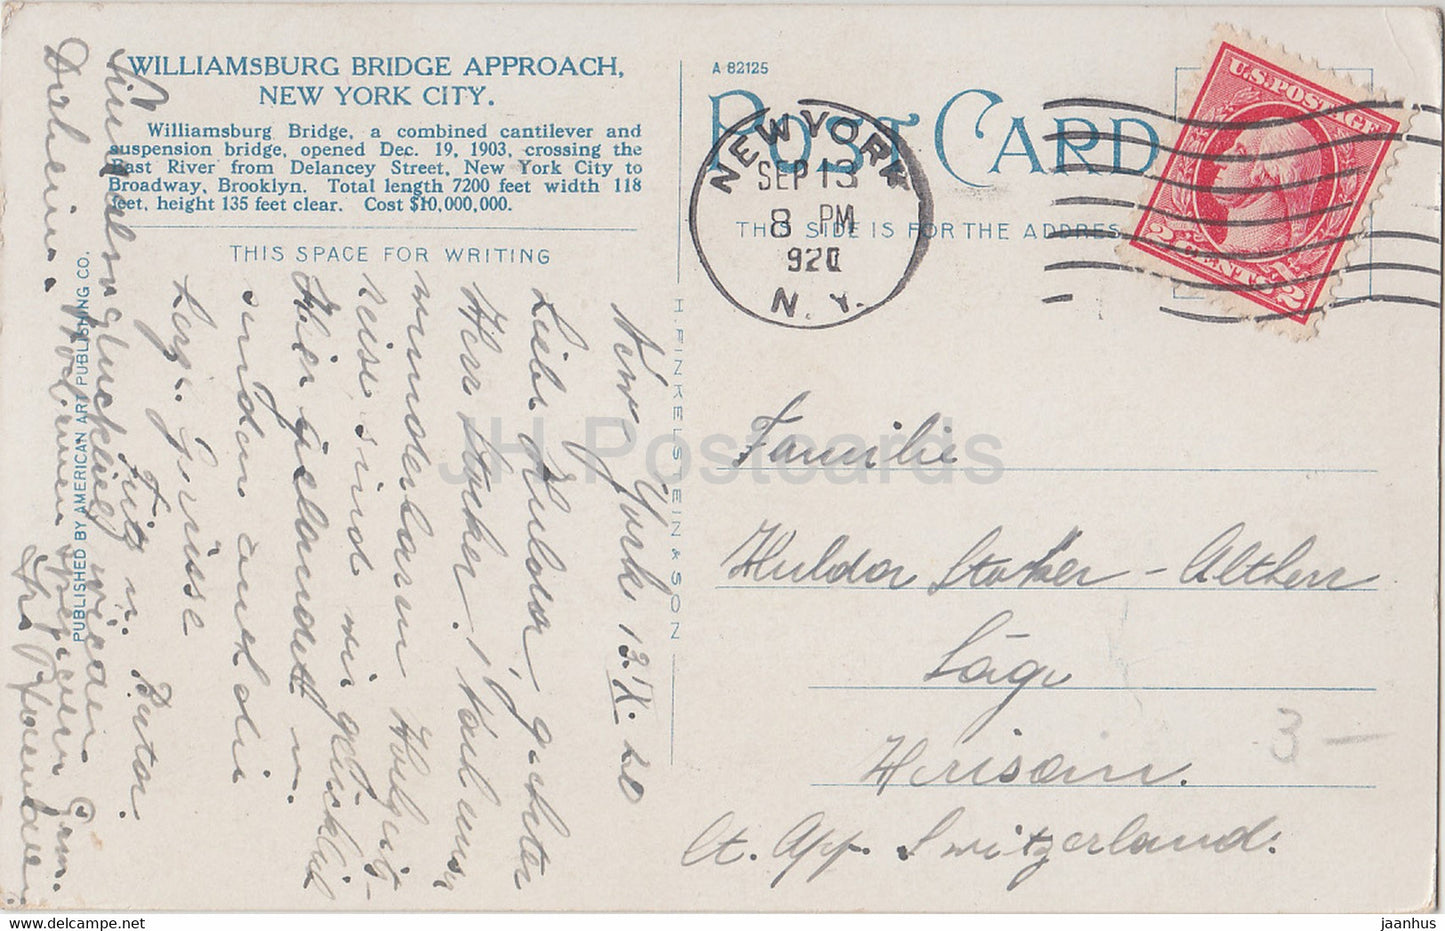 New York City - Williamsburg Bridge Approach - Straßenbahn - alte Postkarte - 1920 - Vereinigte Staaten - USA - gebraucht